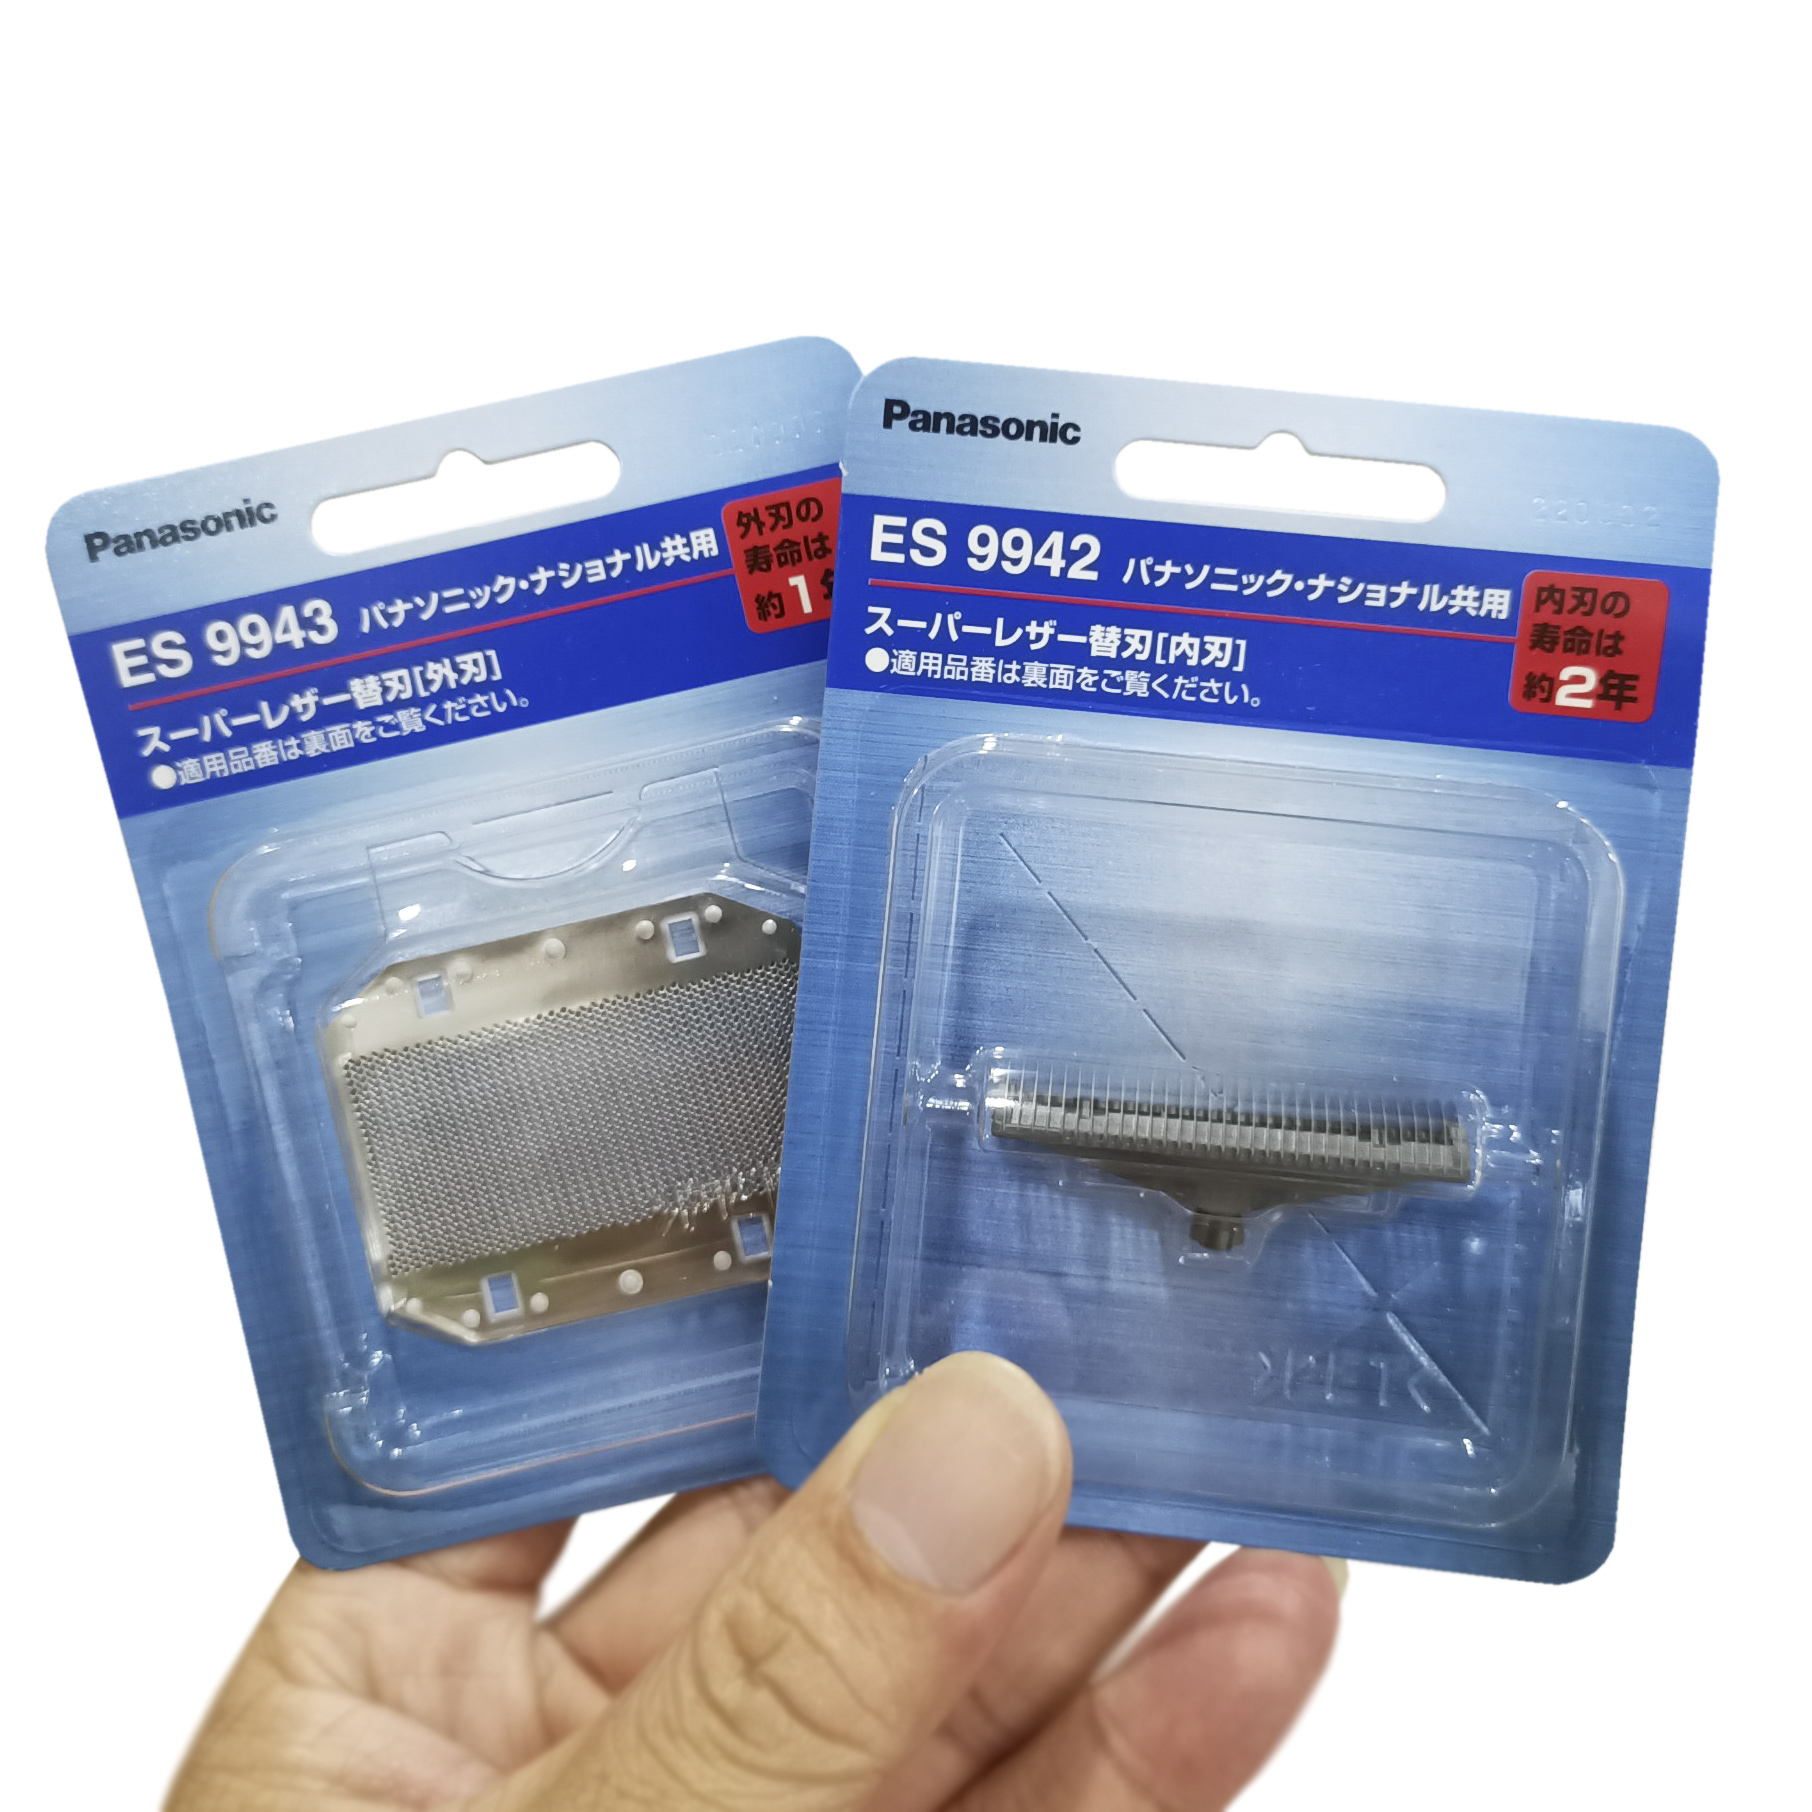 Lưỡi dao và lưới bảo vệ thay thế cho máy cạo râu Panasonic ES-RS10 Nhật Bản